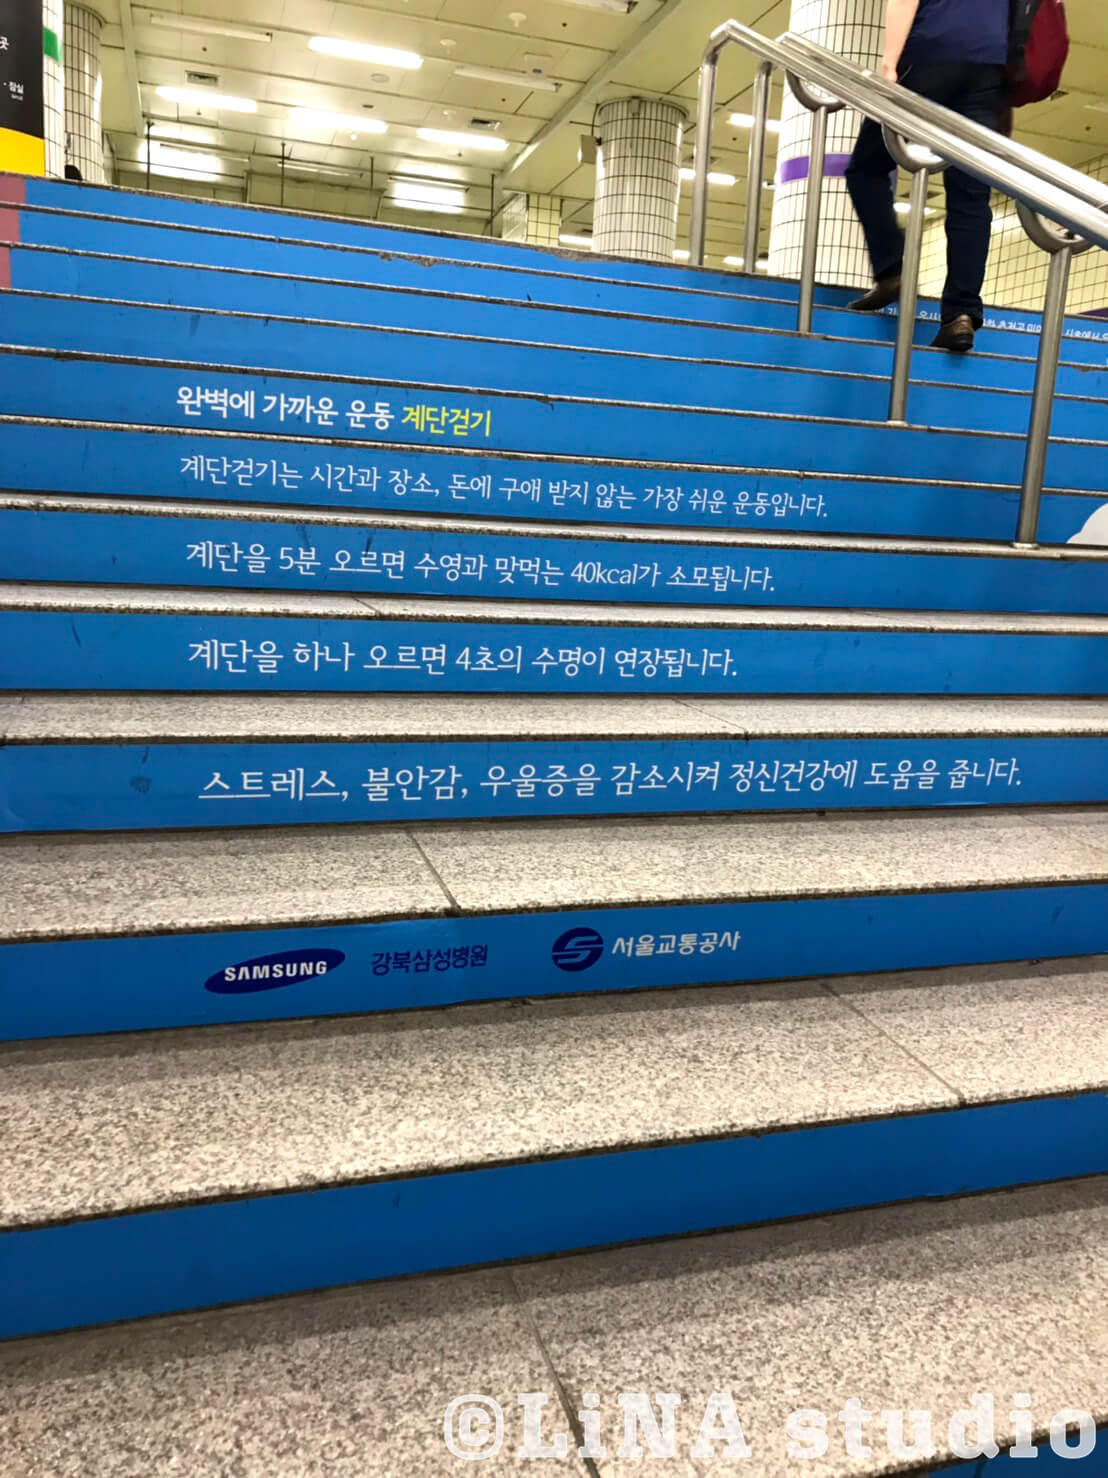 韓国地下鉄階段広告_01